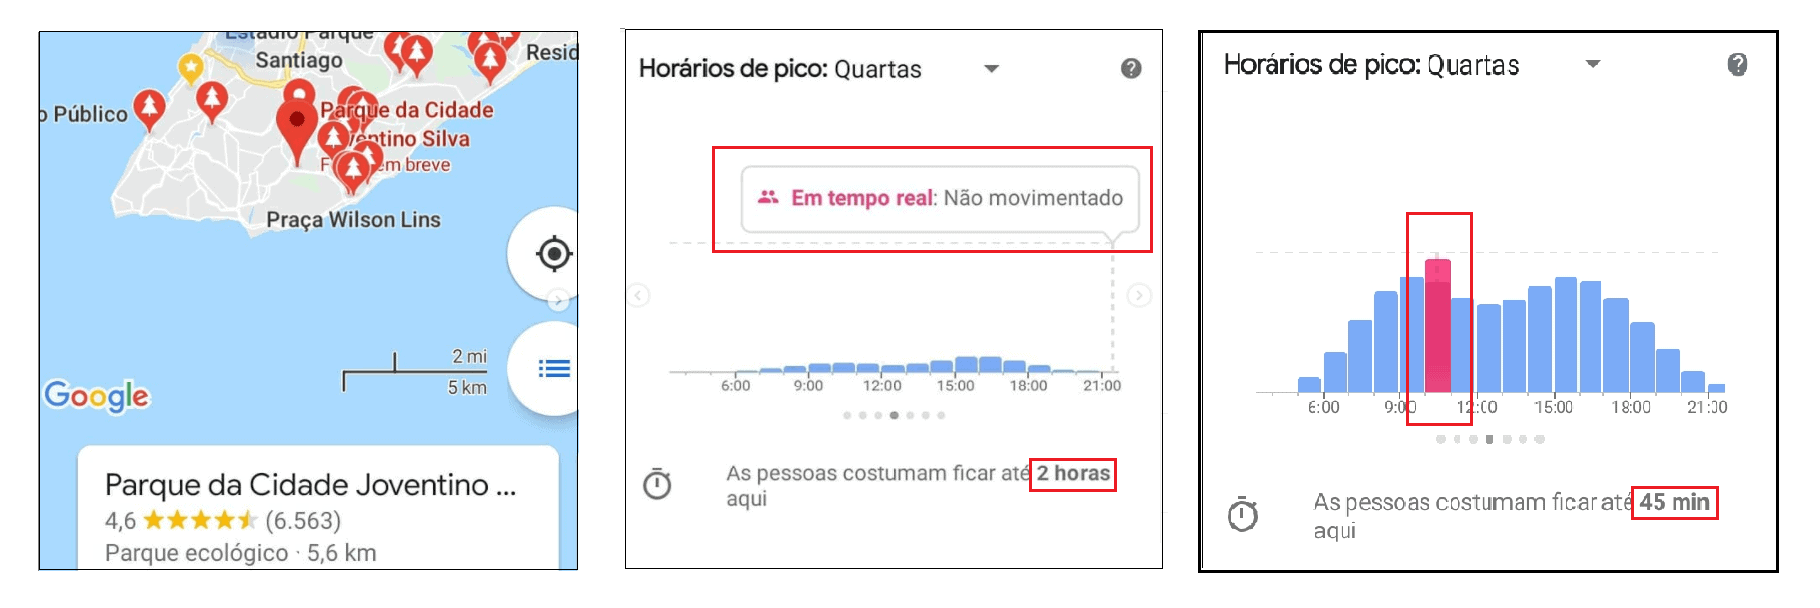 Horarios de Pico Fonte Google Maps 1